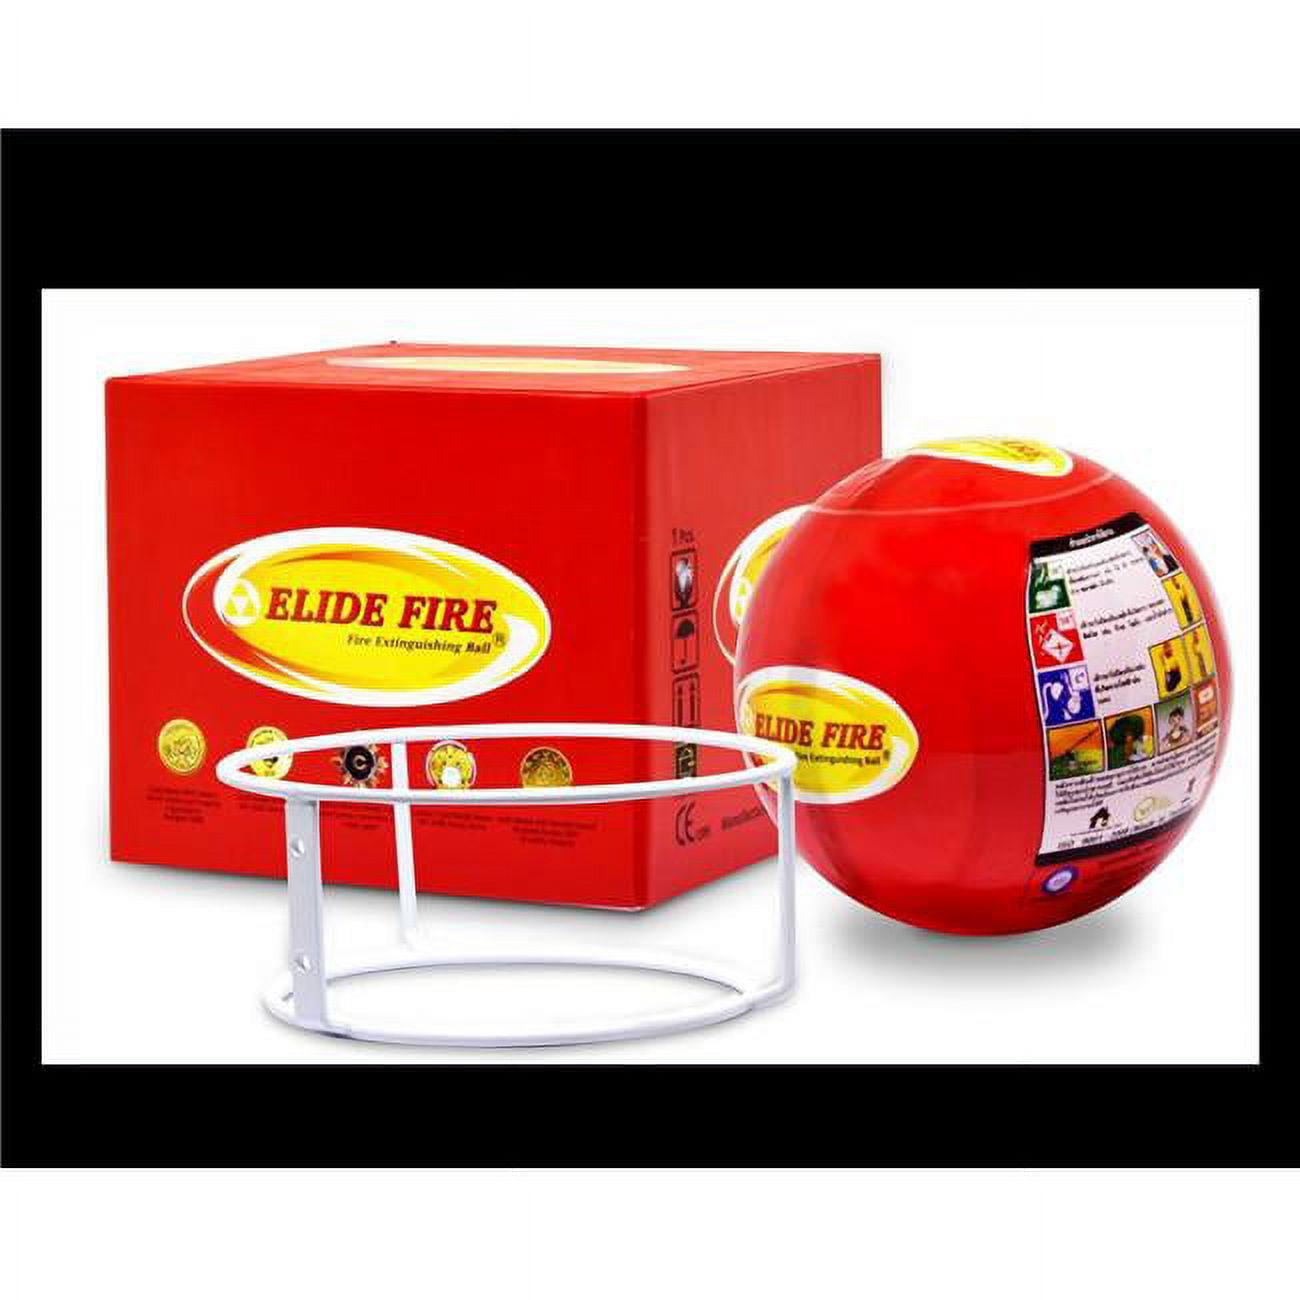 Elide Fire ELB1 6 in. Elide Fire Ball Box